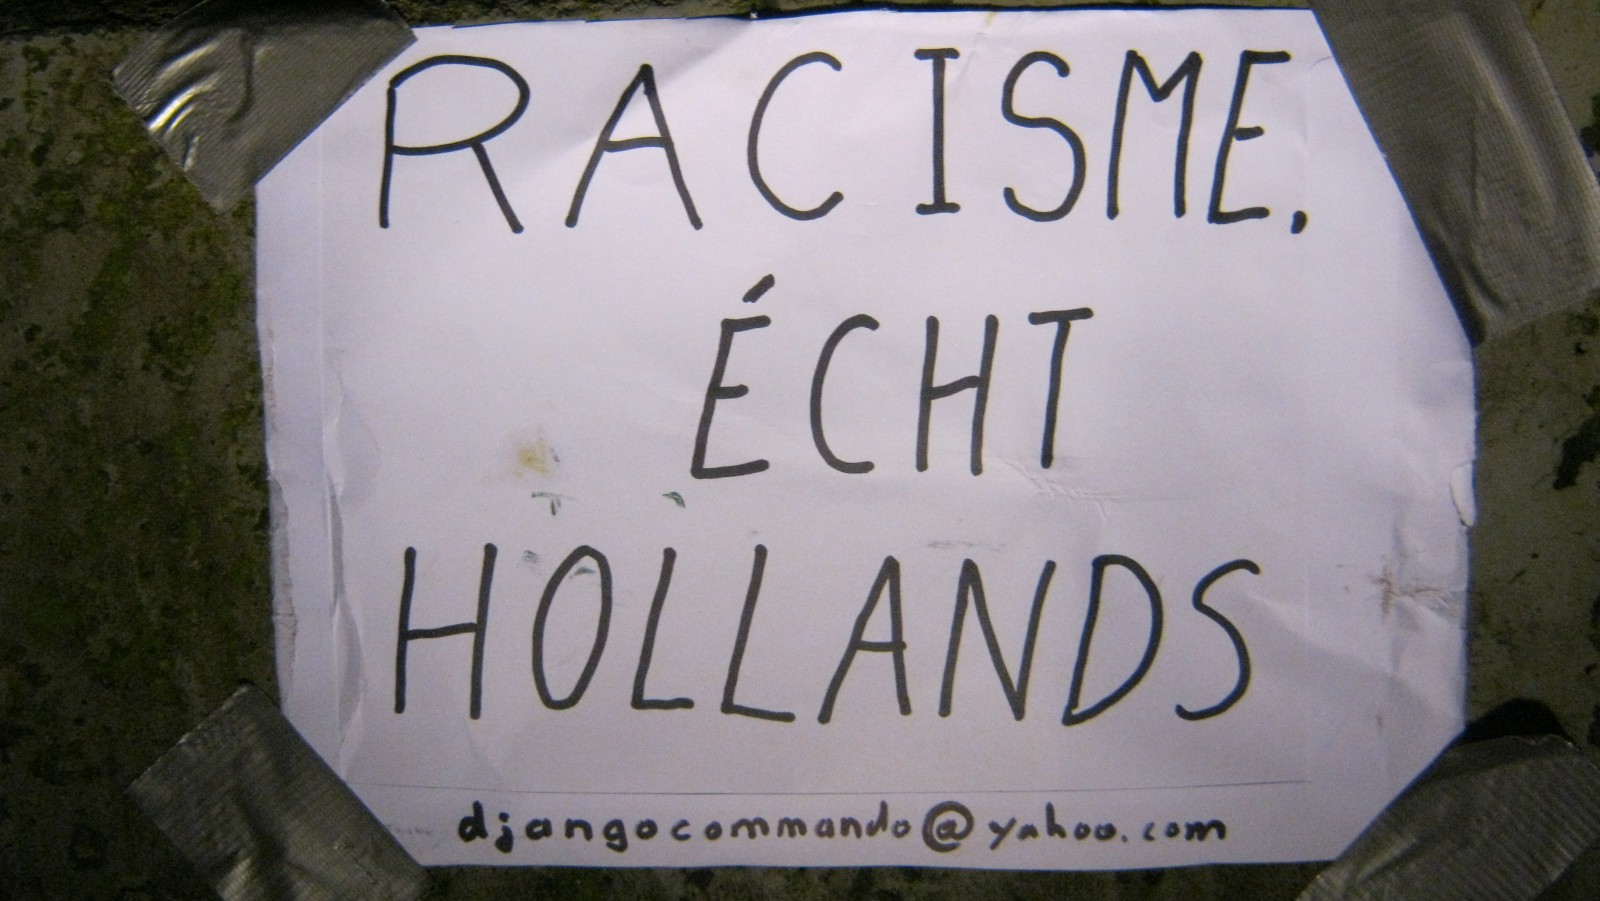 Racisme, écht hollands.
Anti-racisme activisten hebben de beelden van het slavernijmonument in Amsterdam aangekleed als zwarte piet. De actievoerders van het Djangocommando vinden dat zwarte piet een symbool is van het racisme dat vroeger de slavernij mo